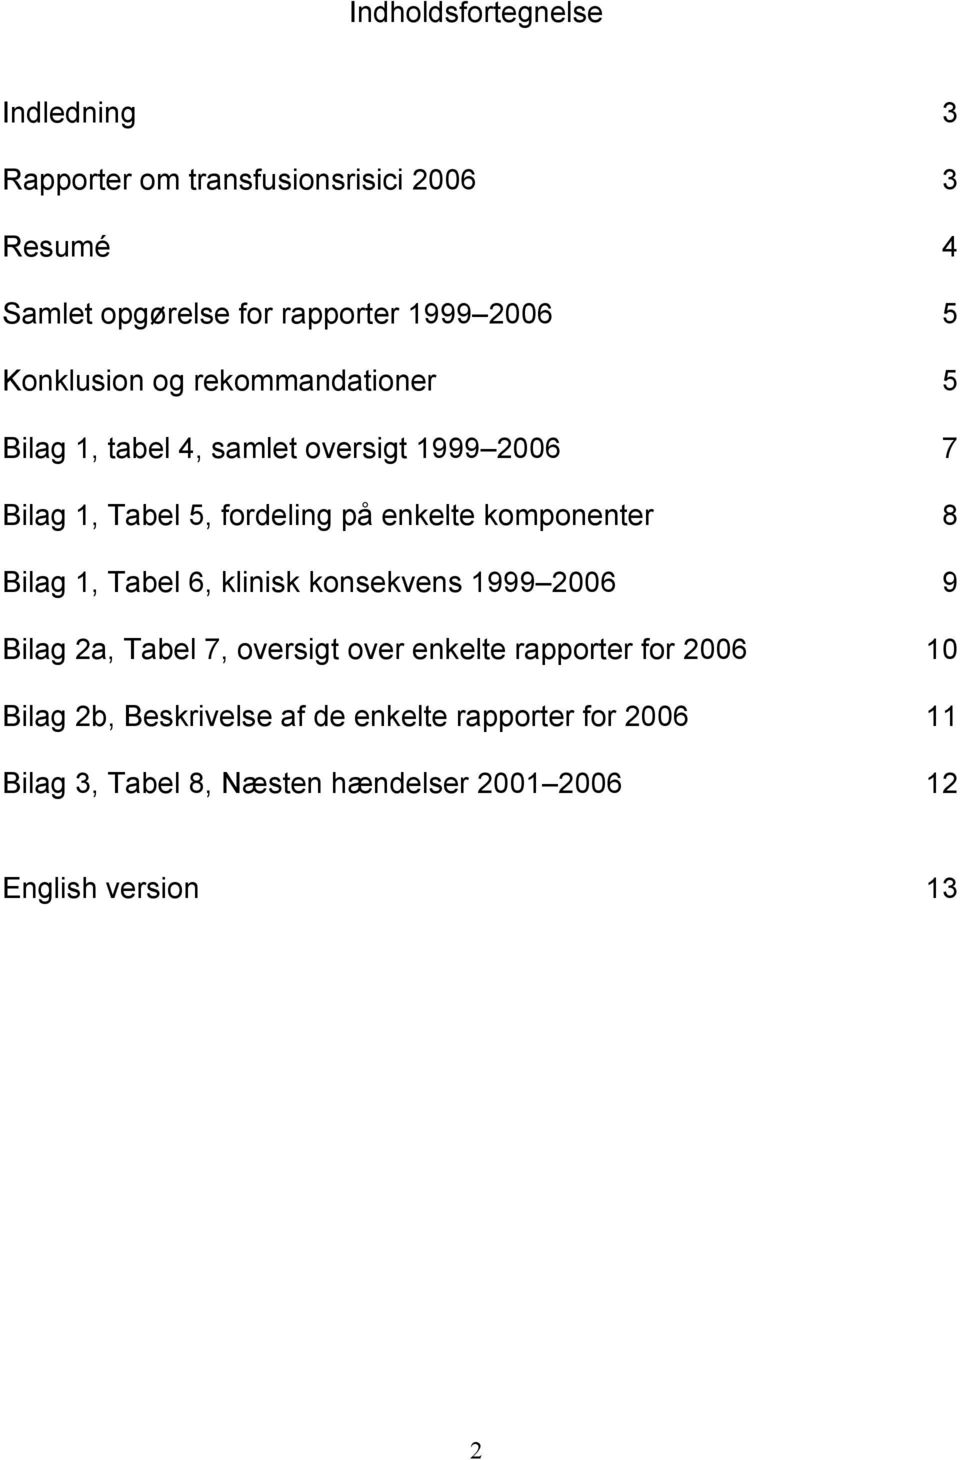 komponenter 8 Bilag 1, Tabel 6, klinisk konsekvens 1999 2006 9 Bilag 2a, Tabel 7, oversigt over enkelte rapporter for 2006